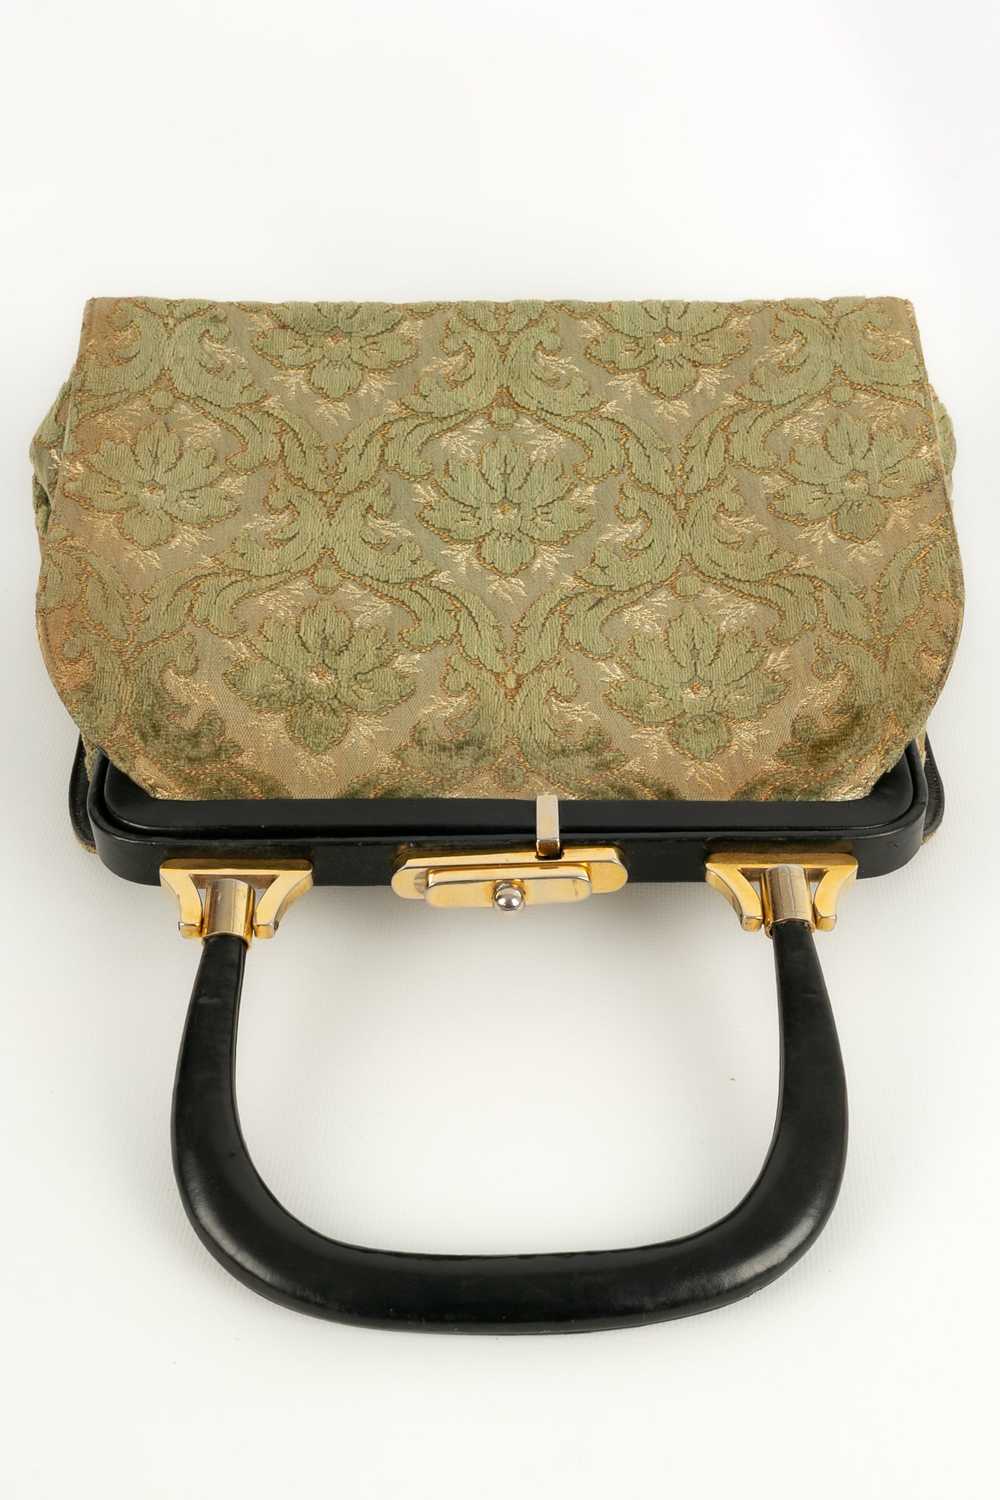 Velvet handbag - image 7